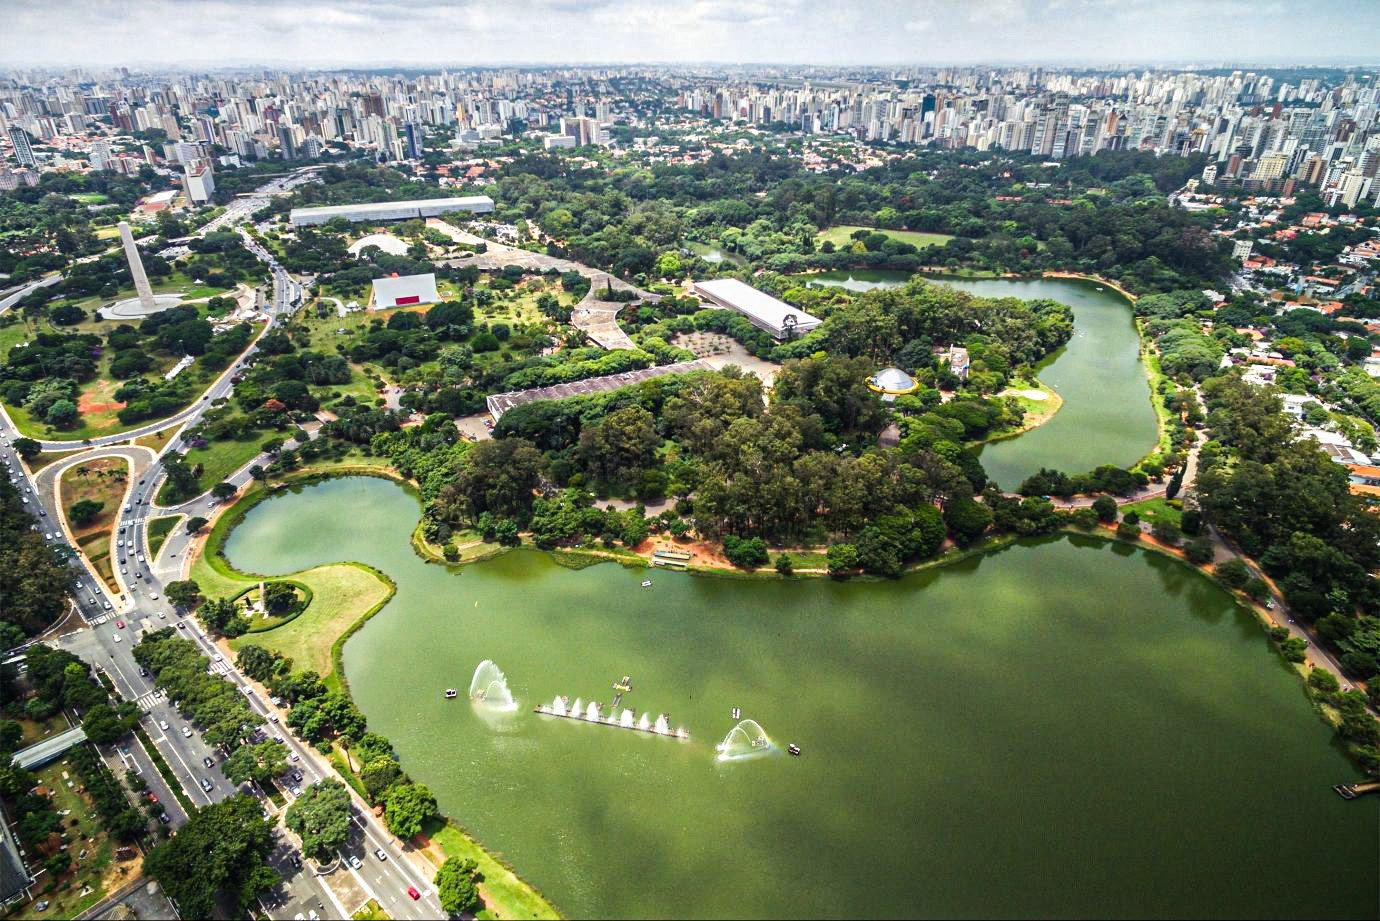 Vista aérea do Parque do Ibirapuera, em São Paulo